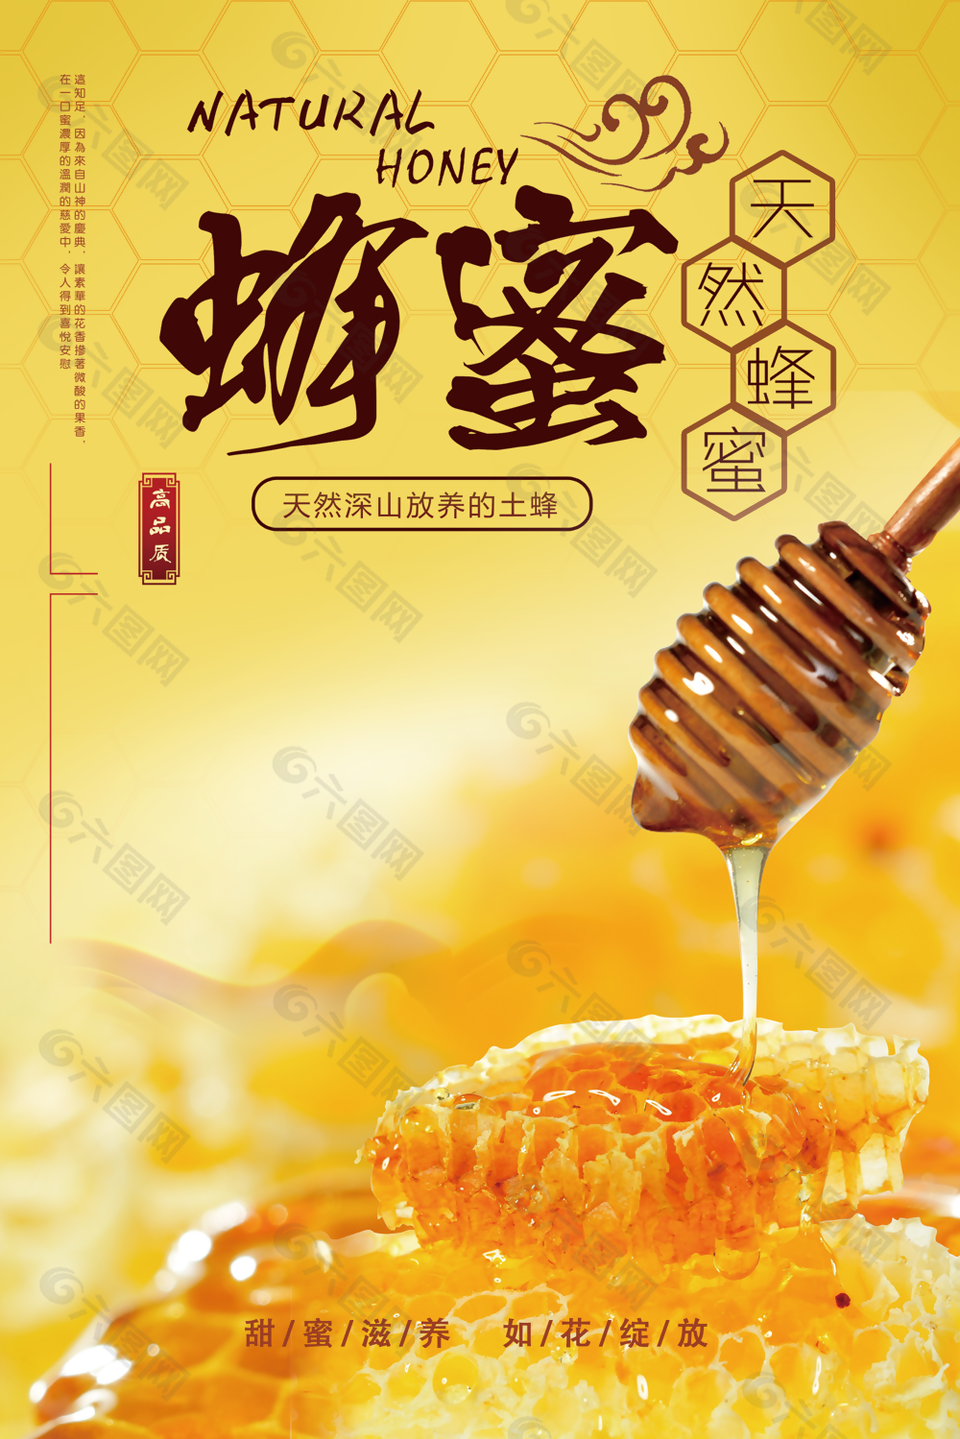 黄色大气简约天然蜂蜜食品宣传海报设计